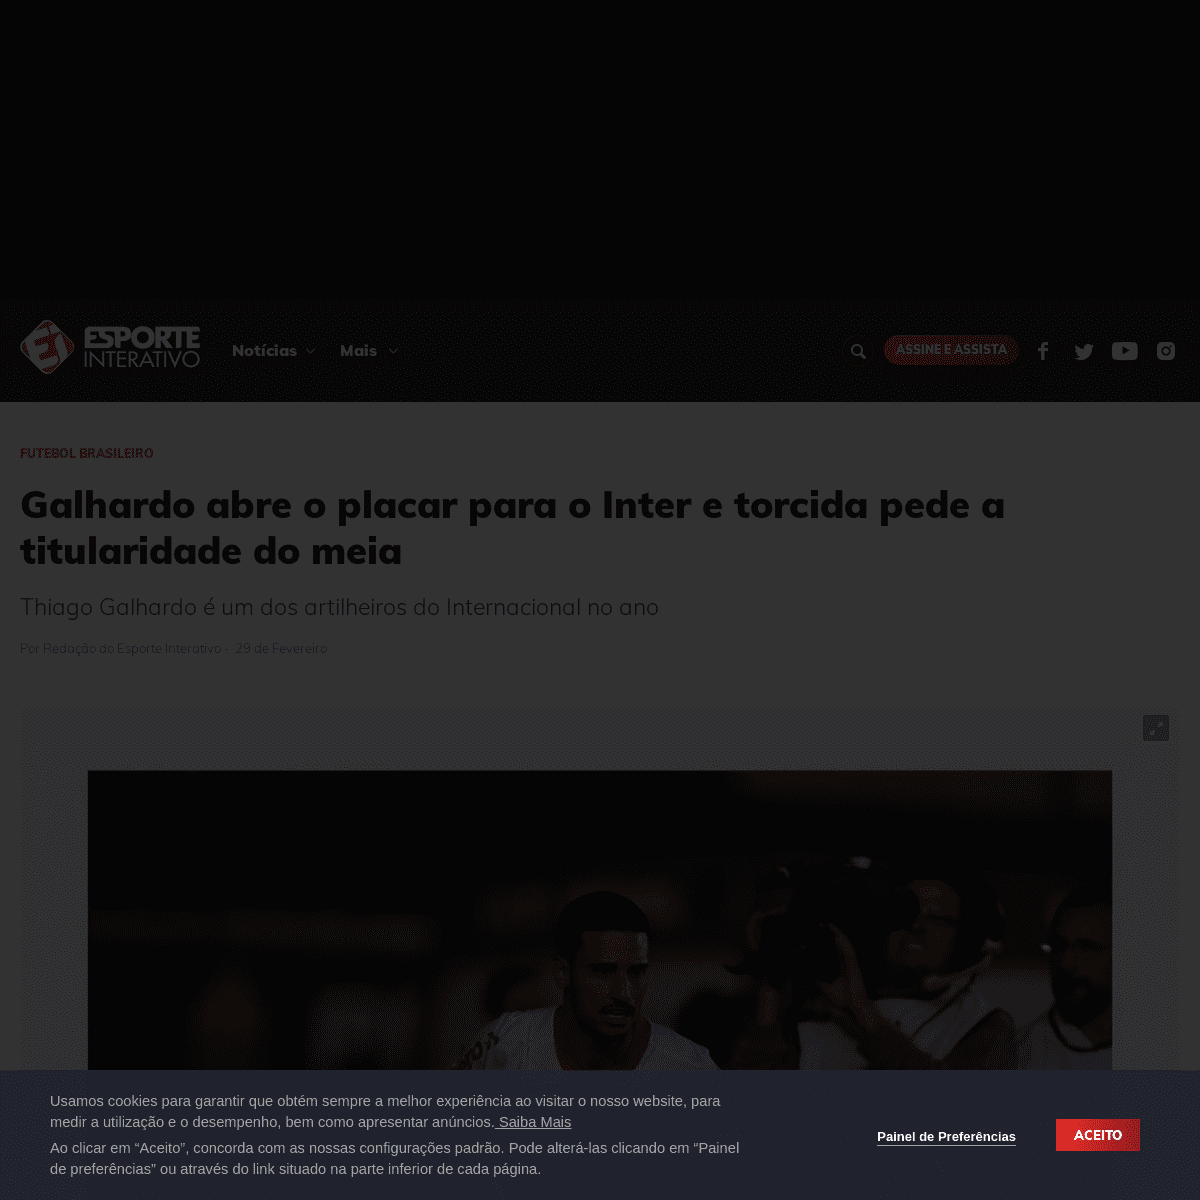 A complete backup of www.esporteinterativo.com.br/futebolbrasileiro/Galhardo-abre-o-placar-para-o-Inter-e-torcida-pede-a-titular